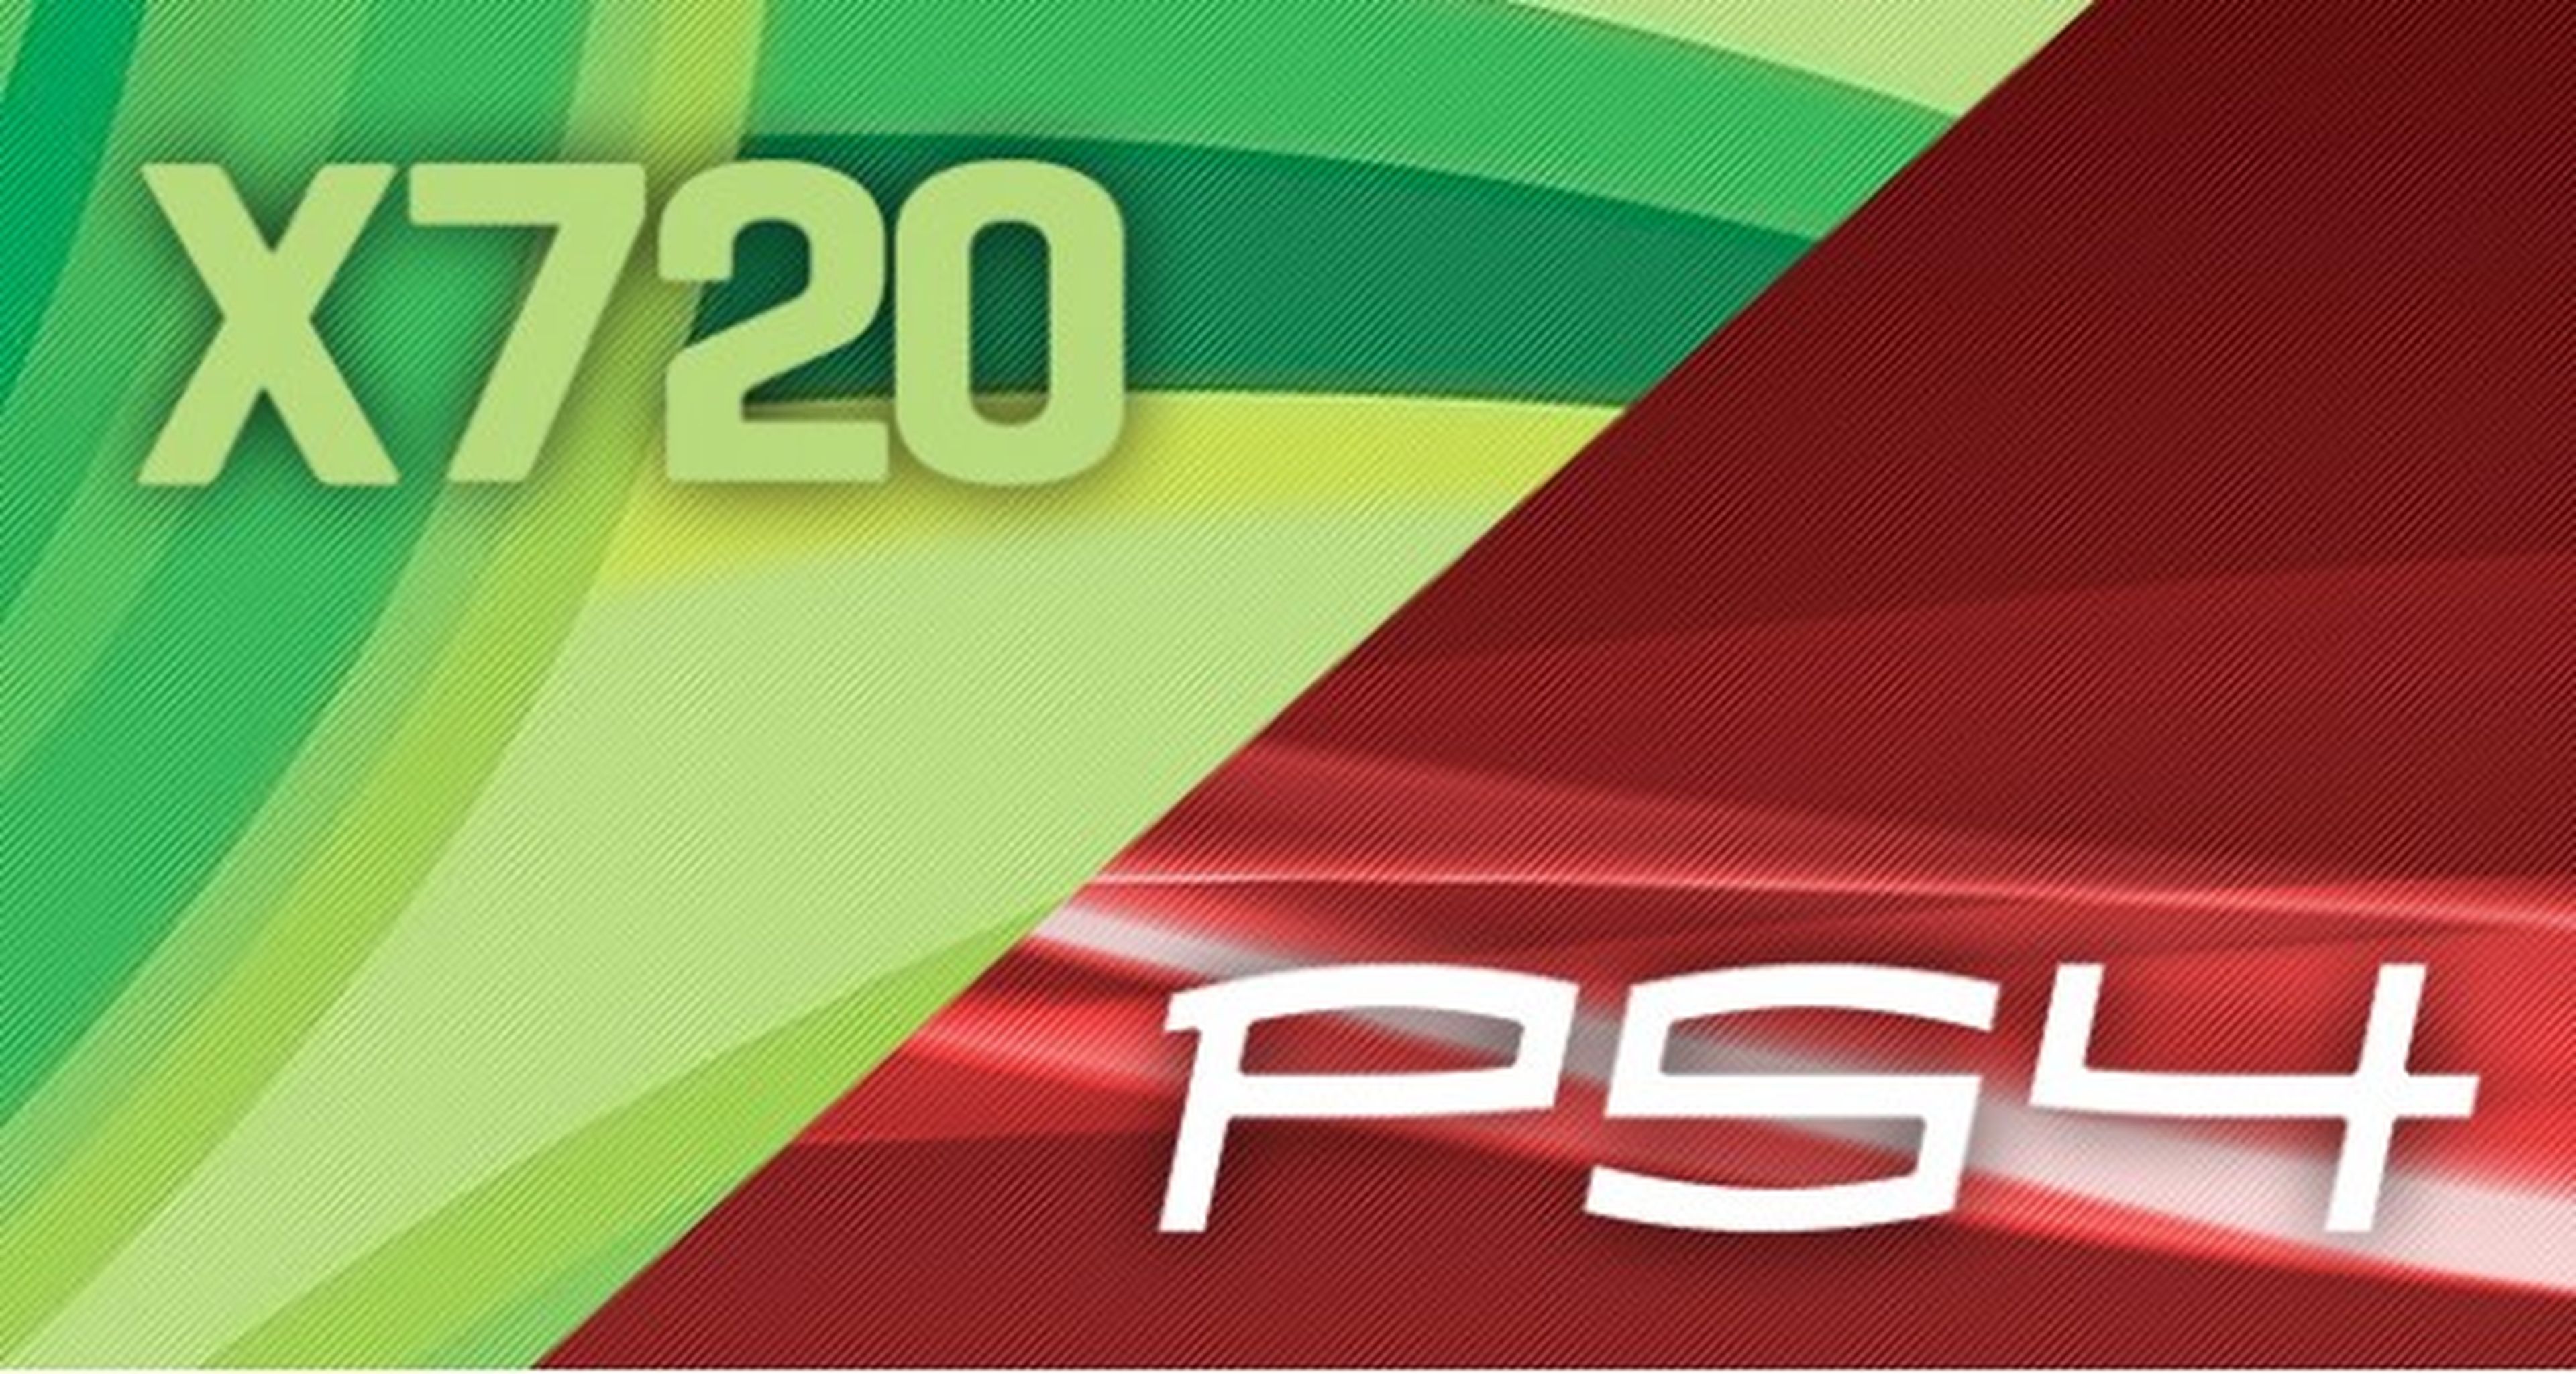 Un equipo de analistas sitúa el precio de PS4 y 720 en 400$